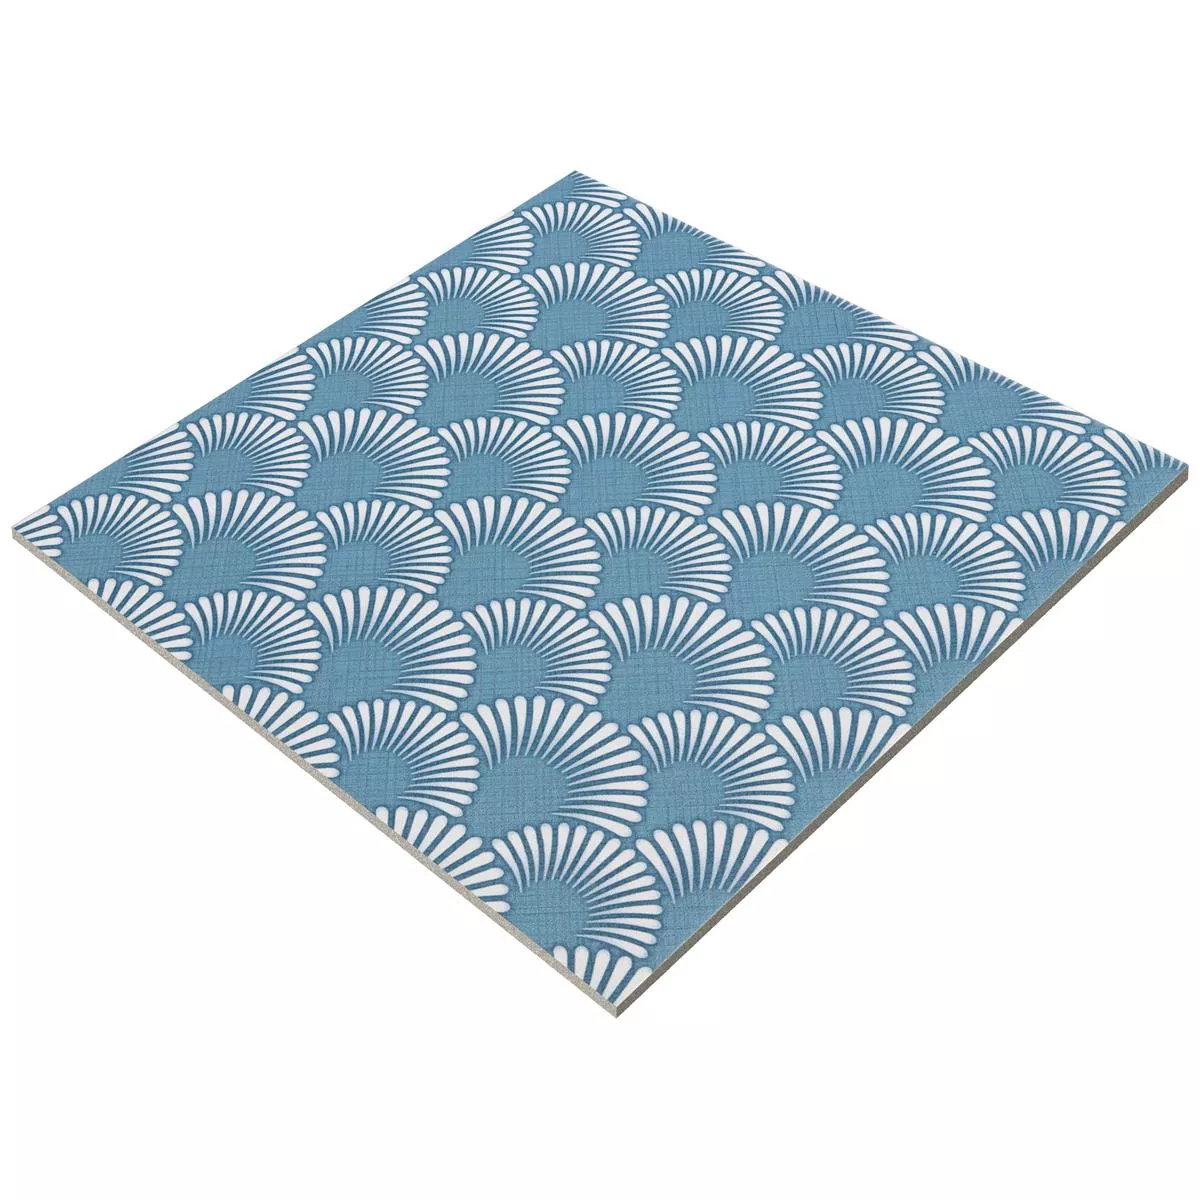 Ladrilhos Aparência de Cimento Wildflower Azul Decoração 18,5x18,5cm